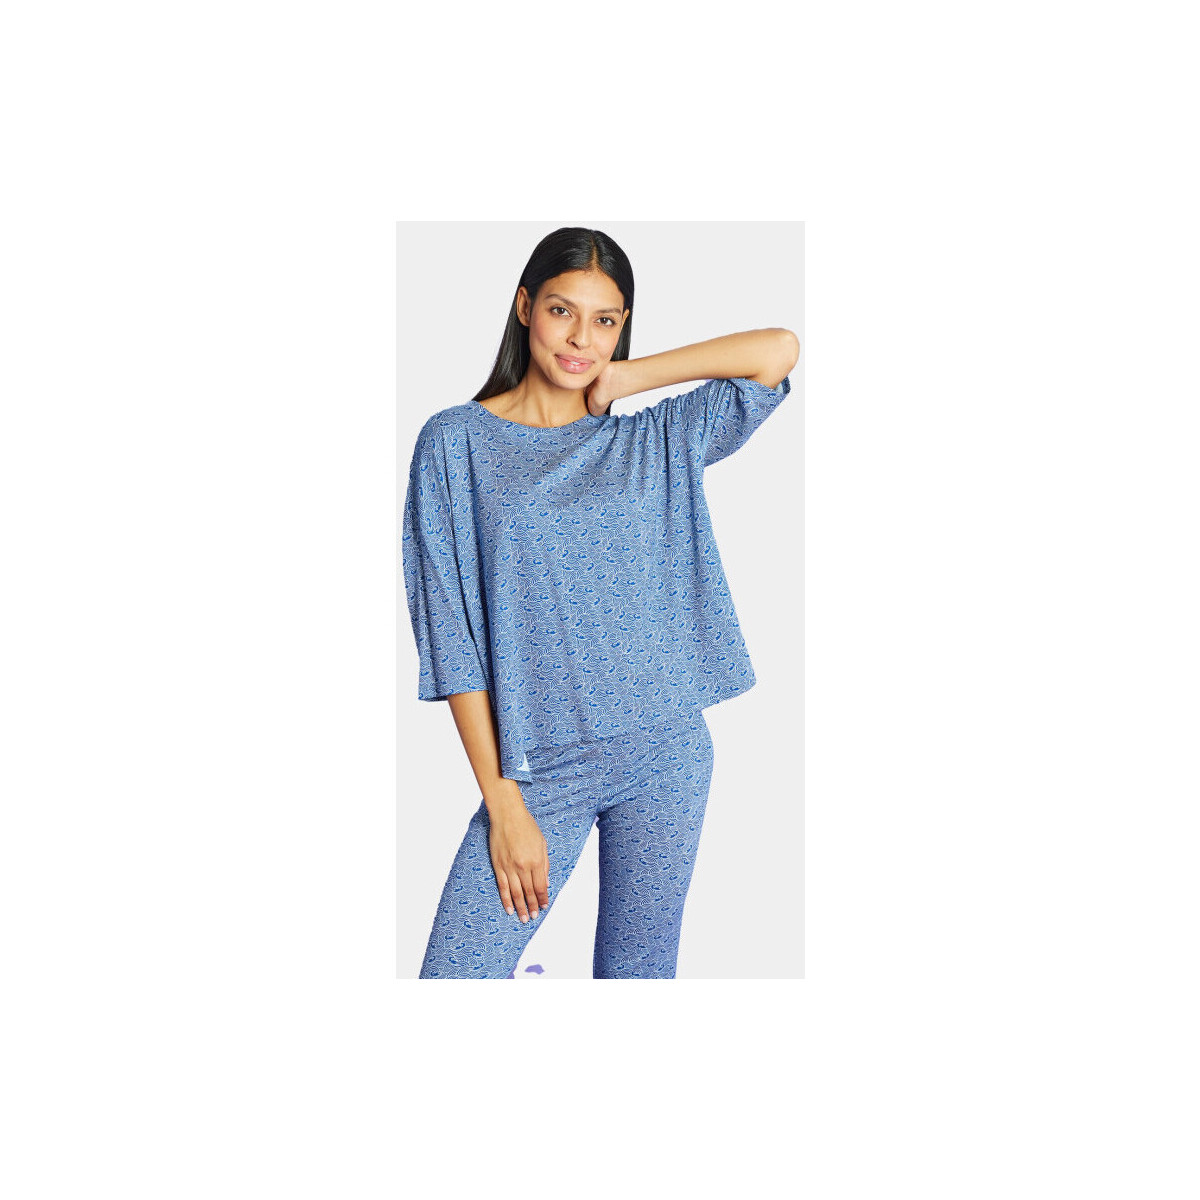 Vêtements Femme Breton Stripe T Shirt Antoine Et Lili T-shirt Large M3/4 Serenite Bleu